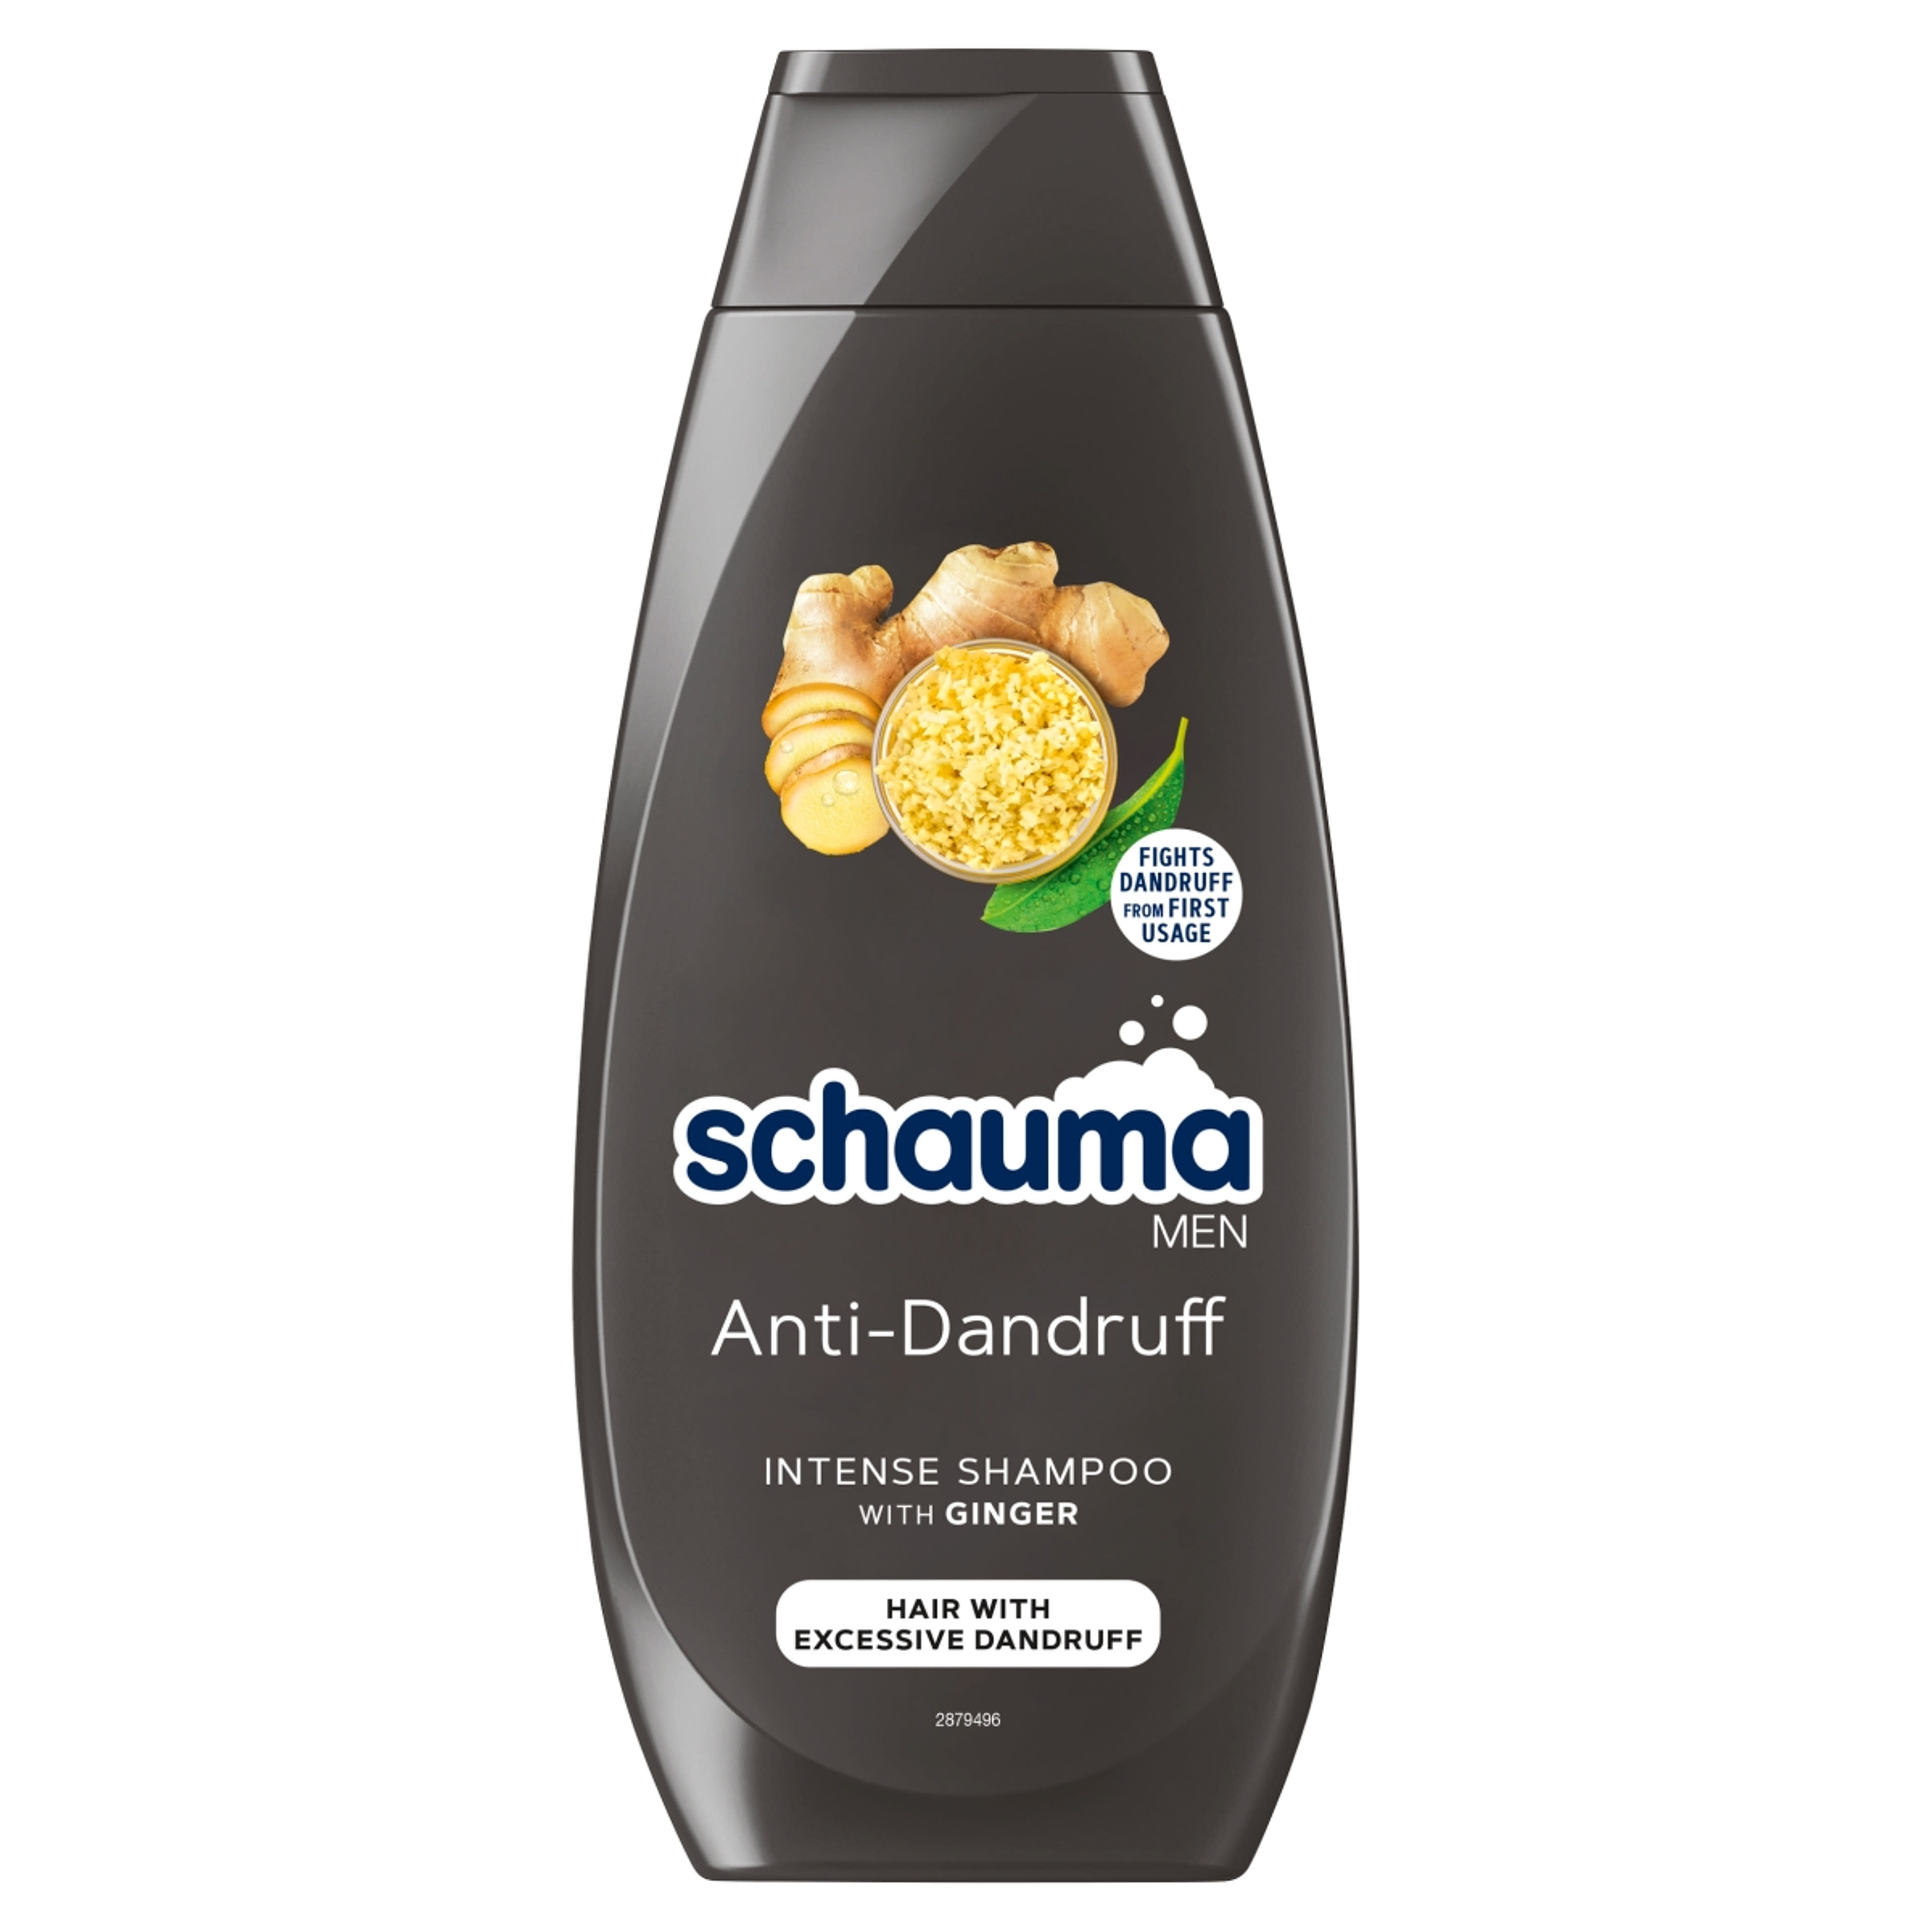 Schauma sampon korpásodás elleni intenzív - 400 ml-1